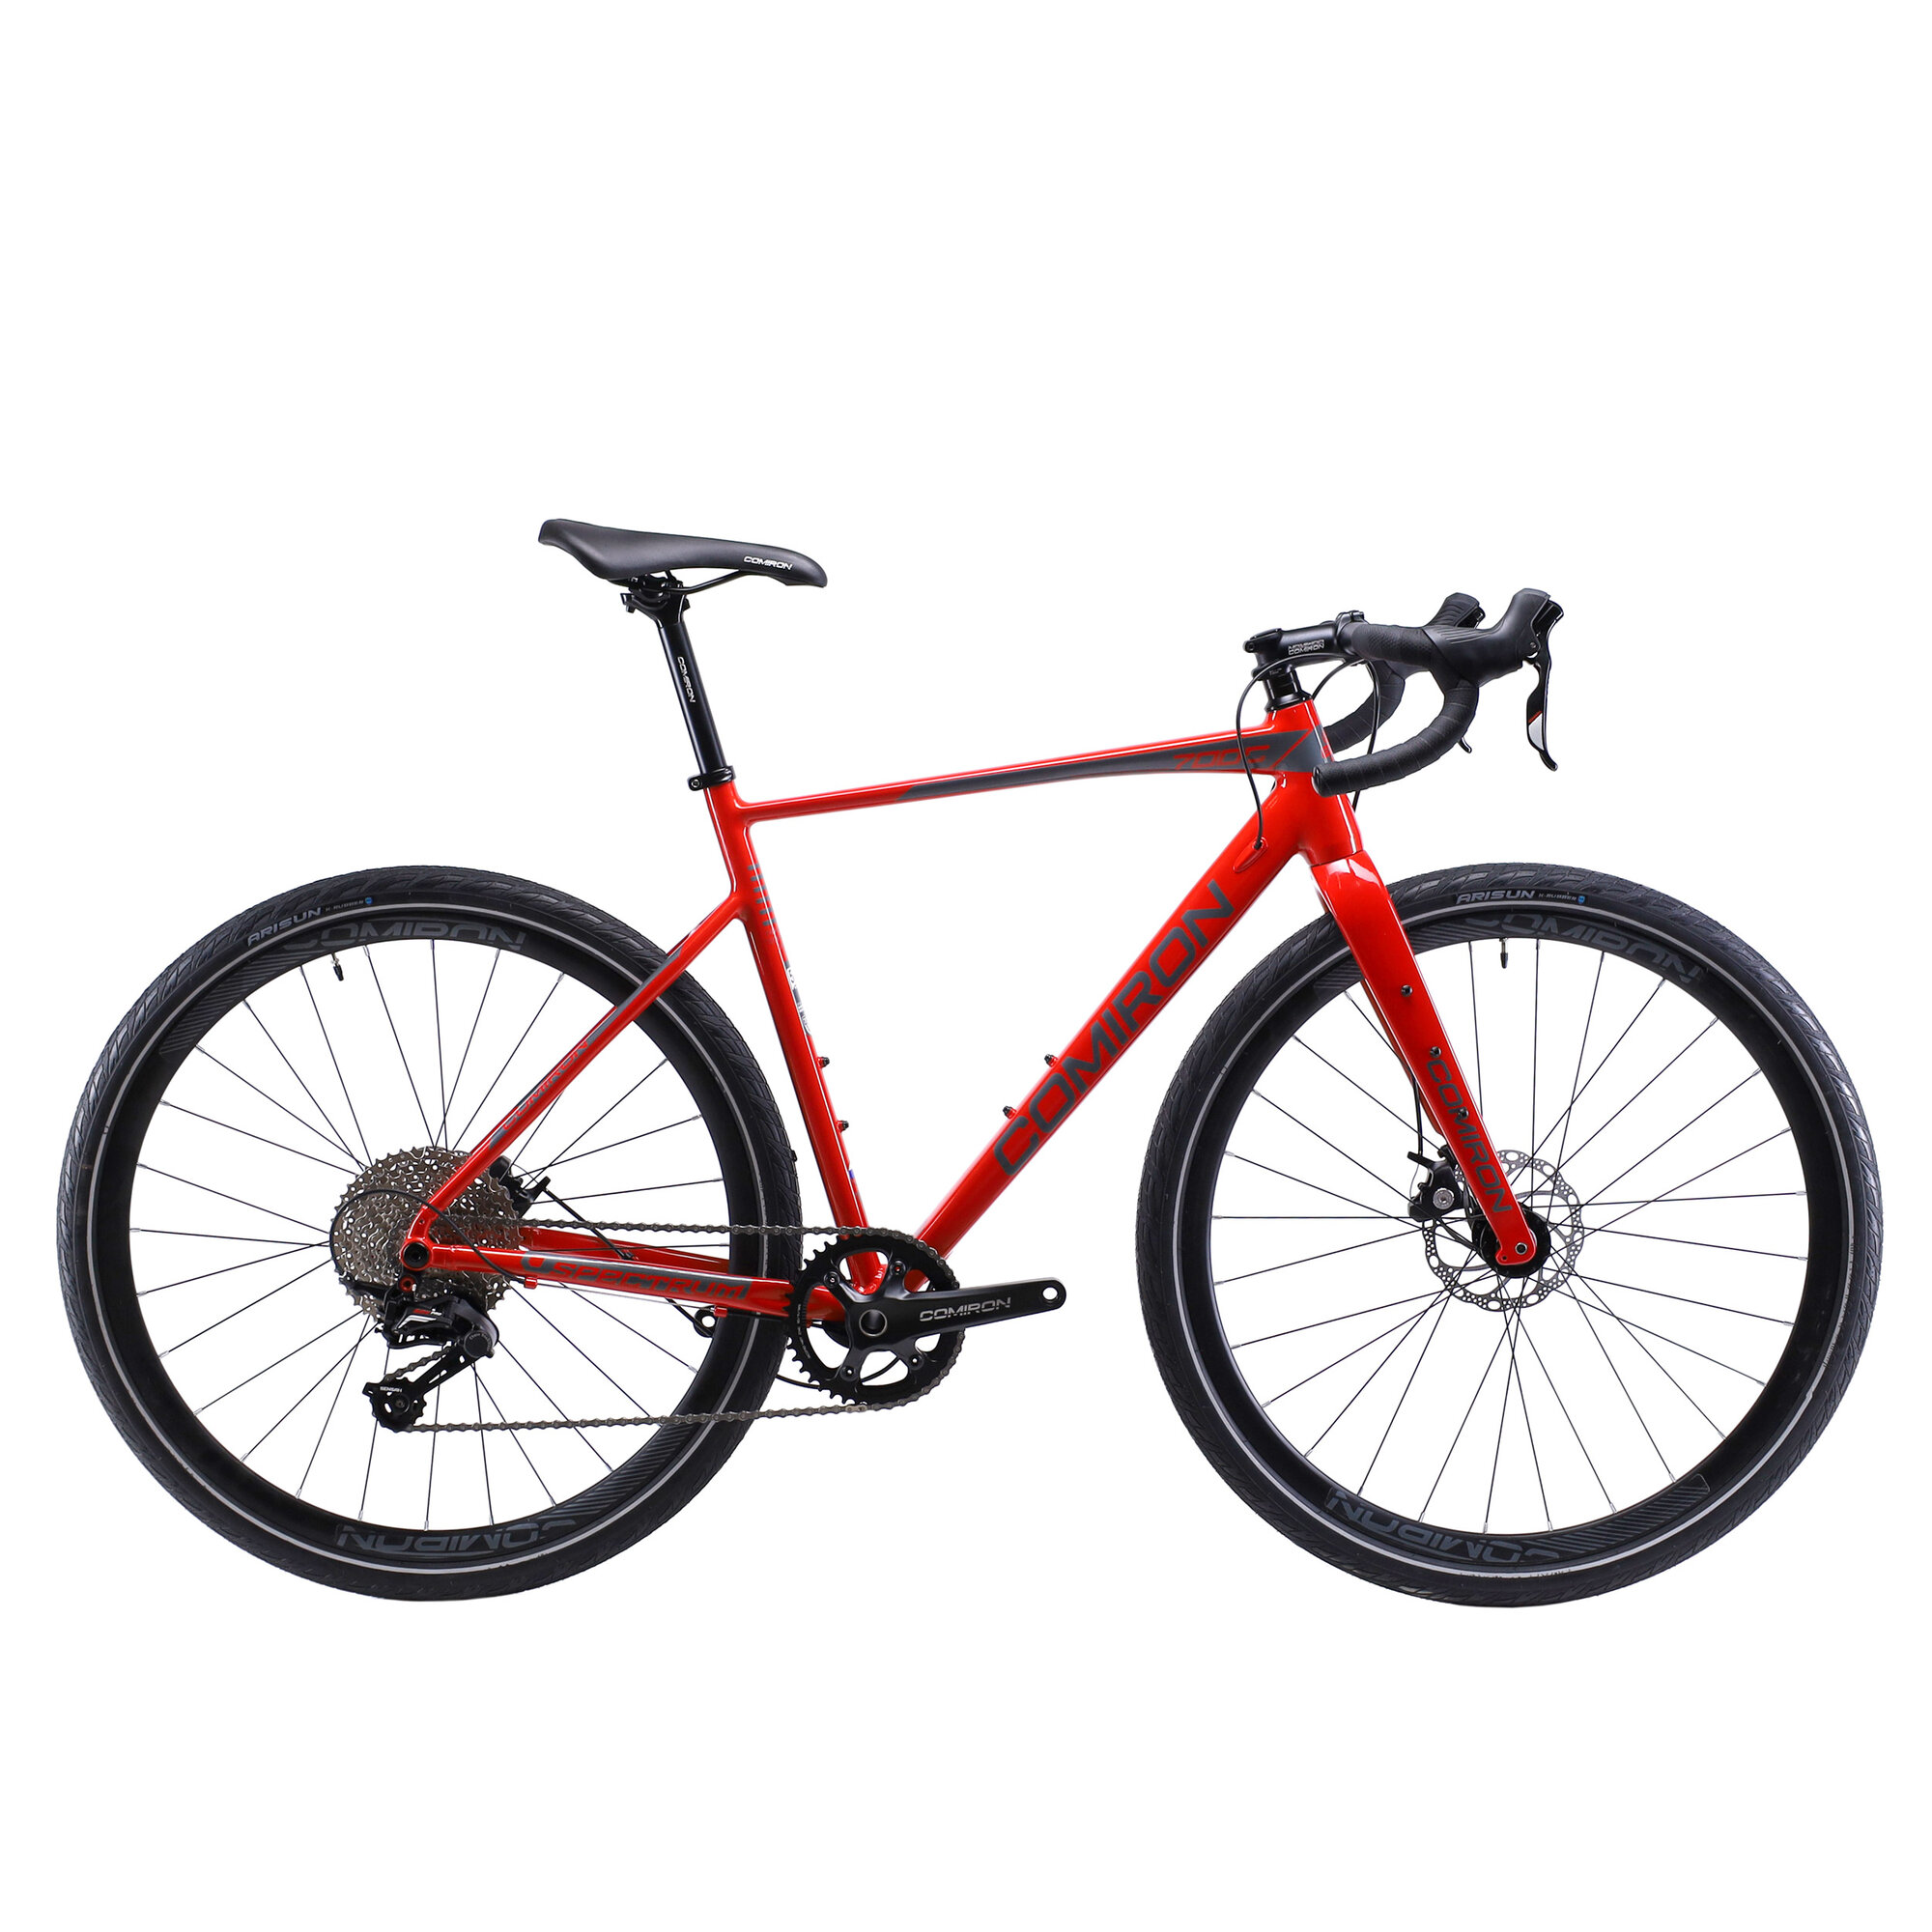 Велосипед GRAVEL COMIRON SPECTRUM I 700C-510mm, карбон. вилка, на осях, 11 скоростей. цвет: красный red comet